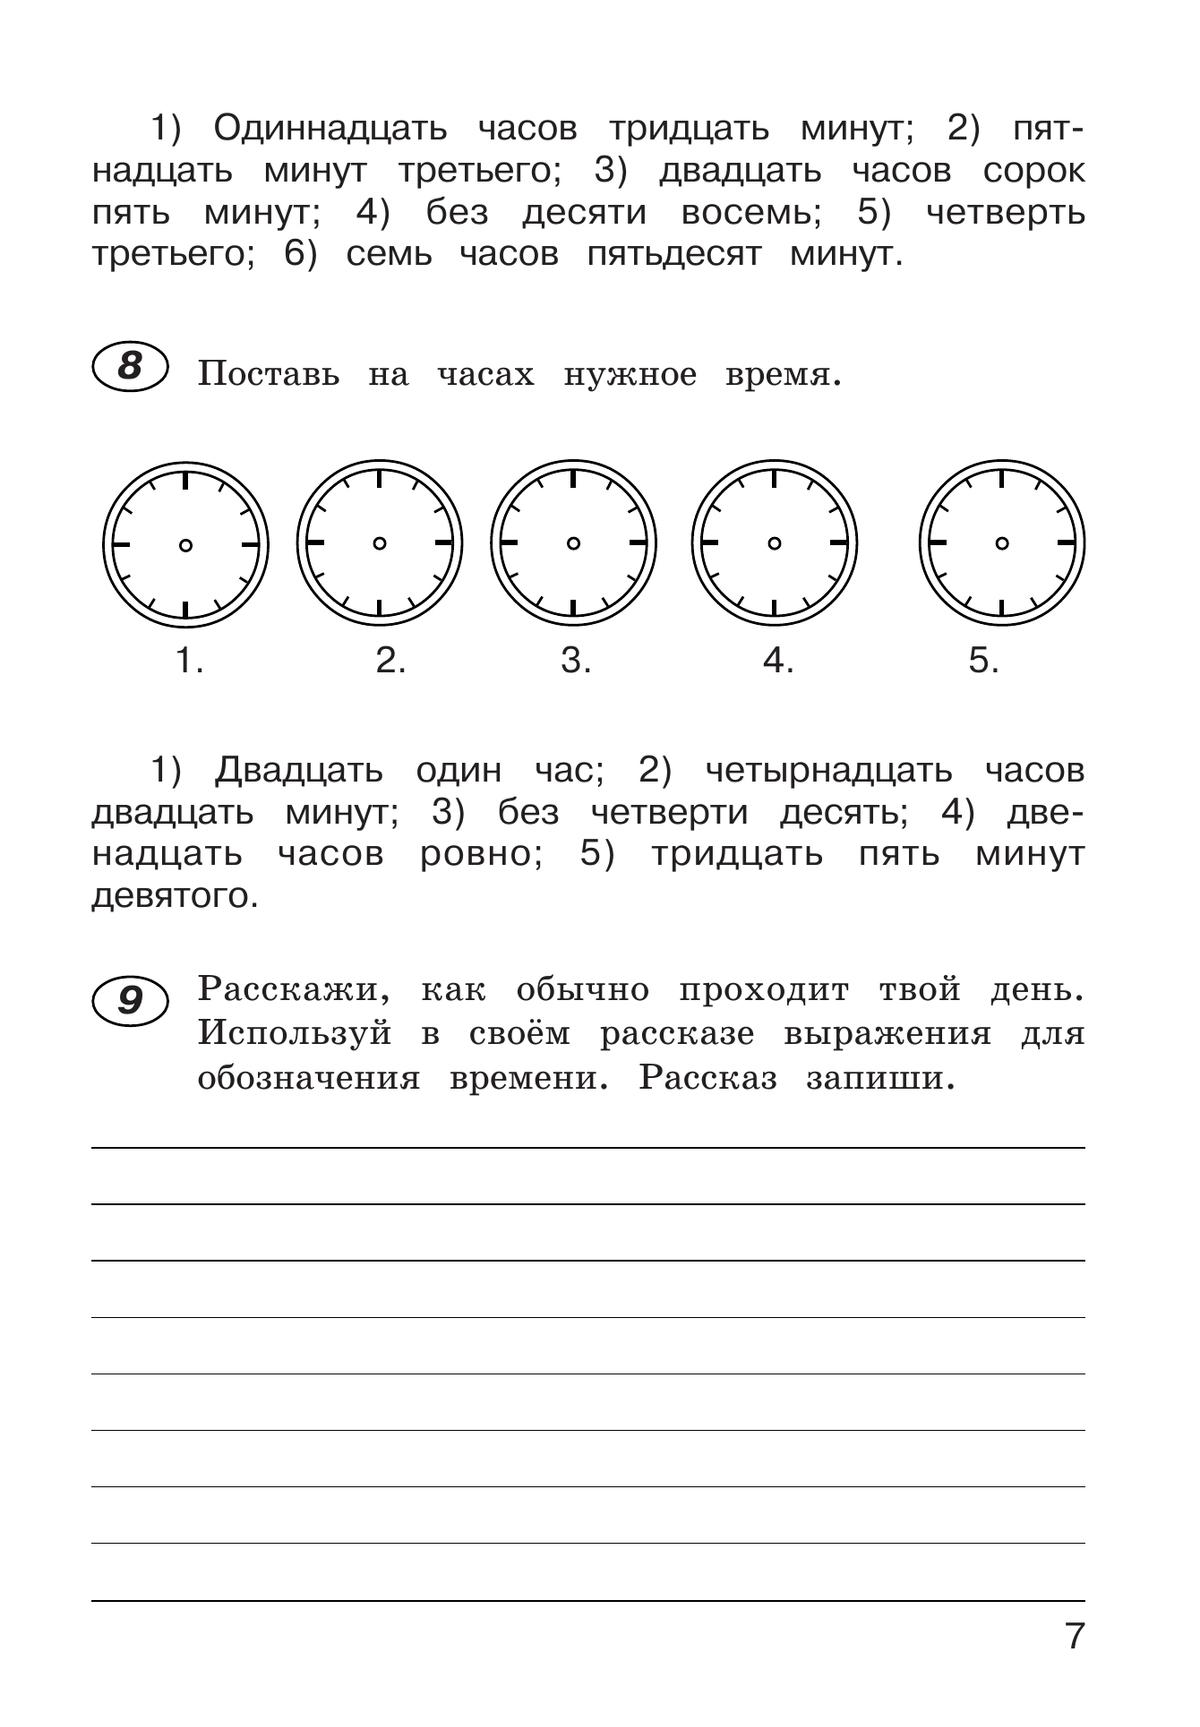 Рабочая тетрадь по русскому языку. 4 класс. В 2 частях. Часть 2 4